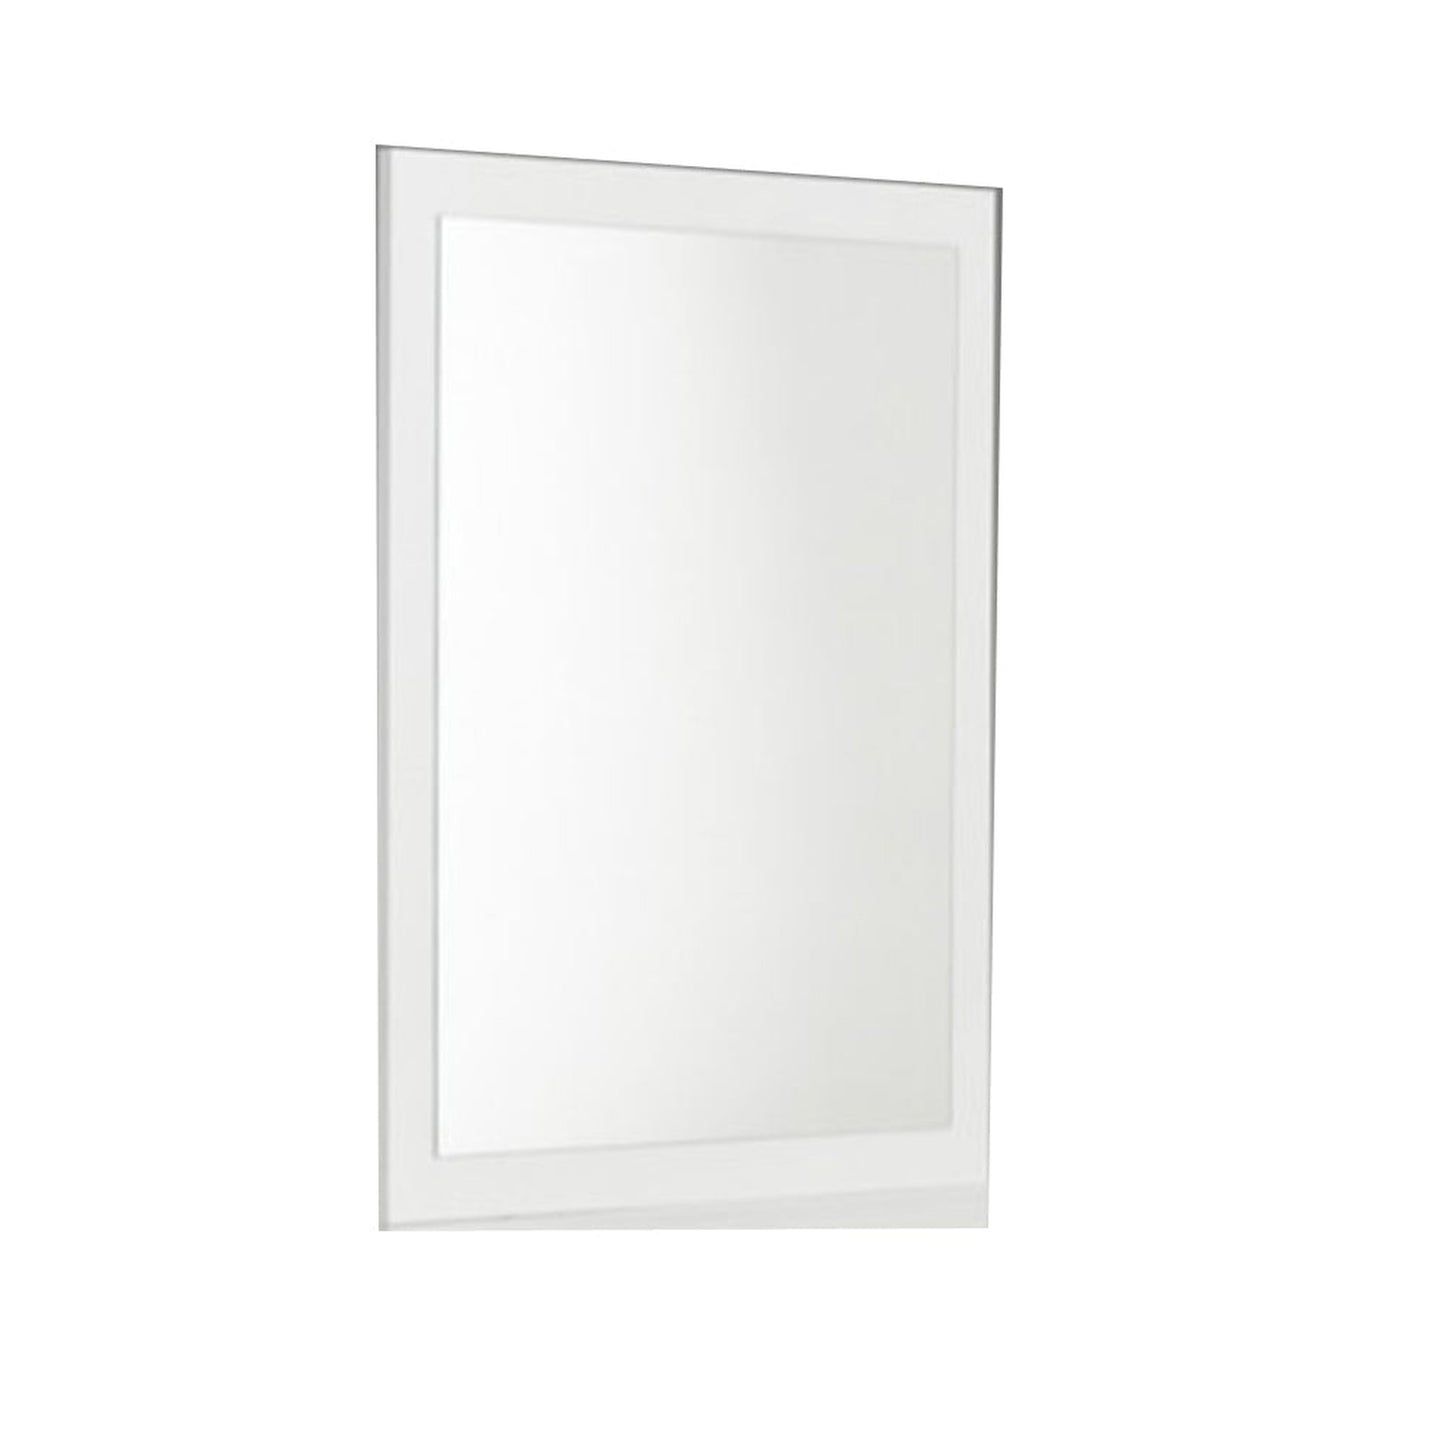 Benzara White Rectangular Wooden Framed Mirror